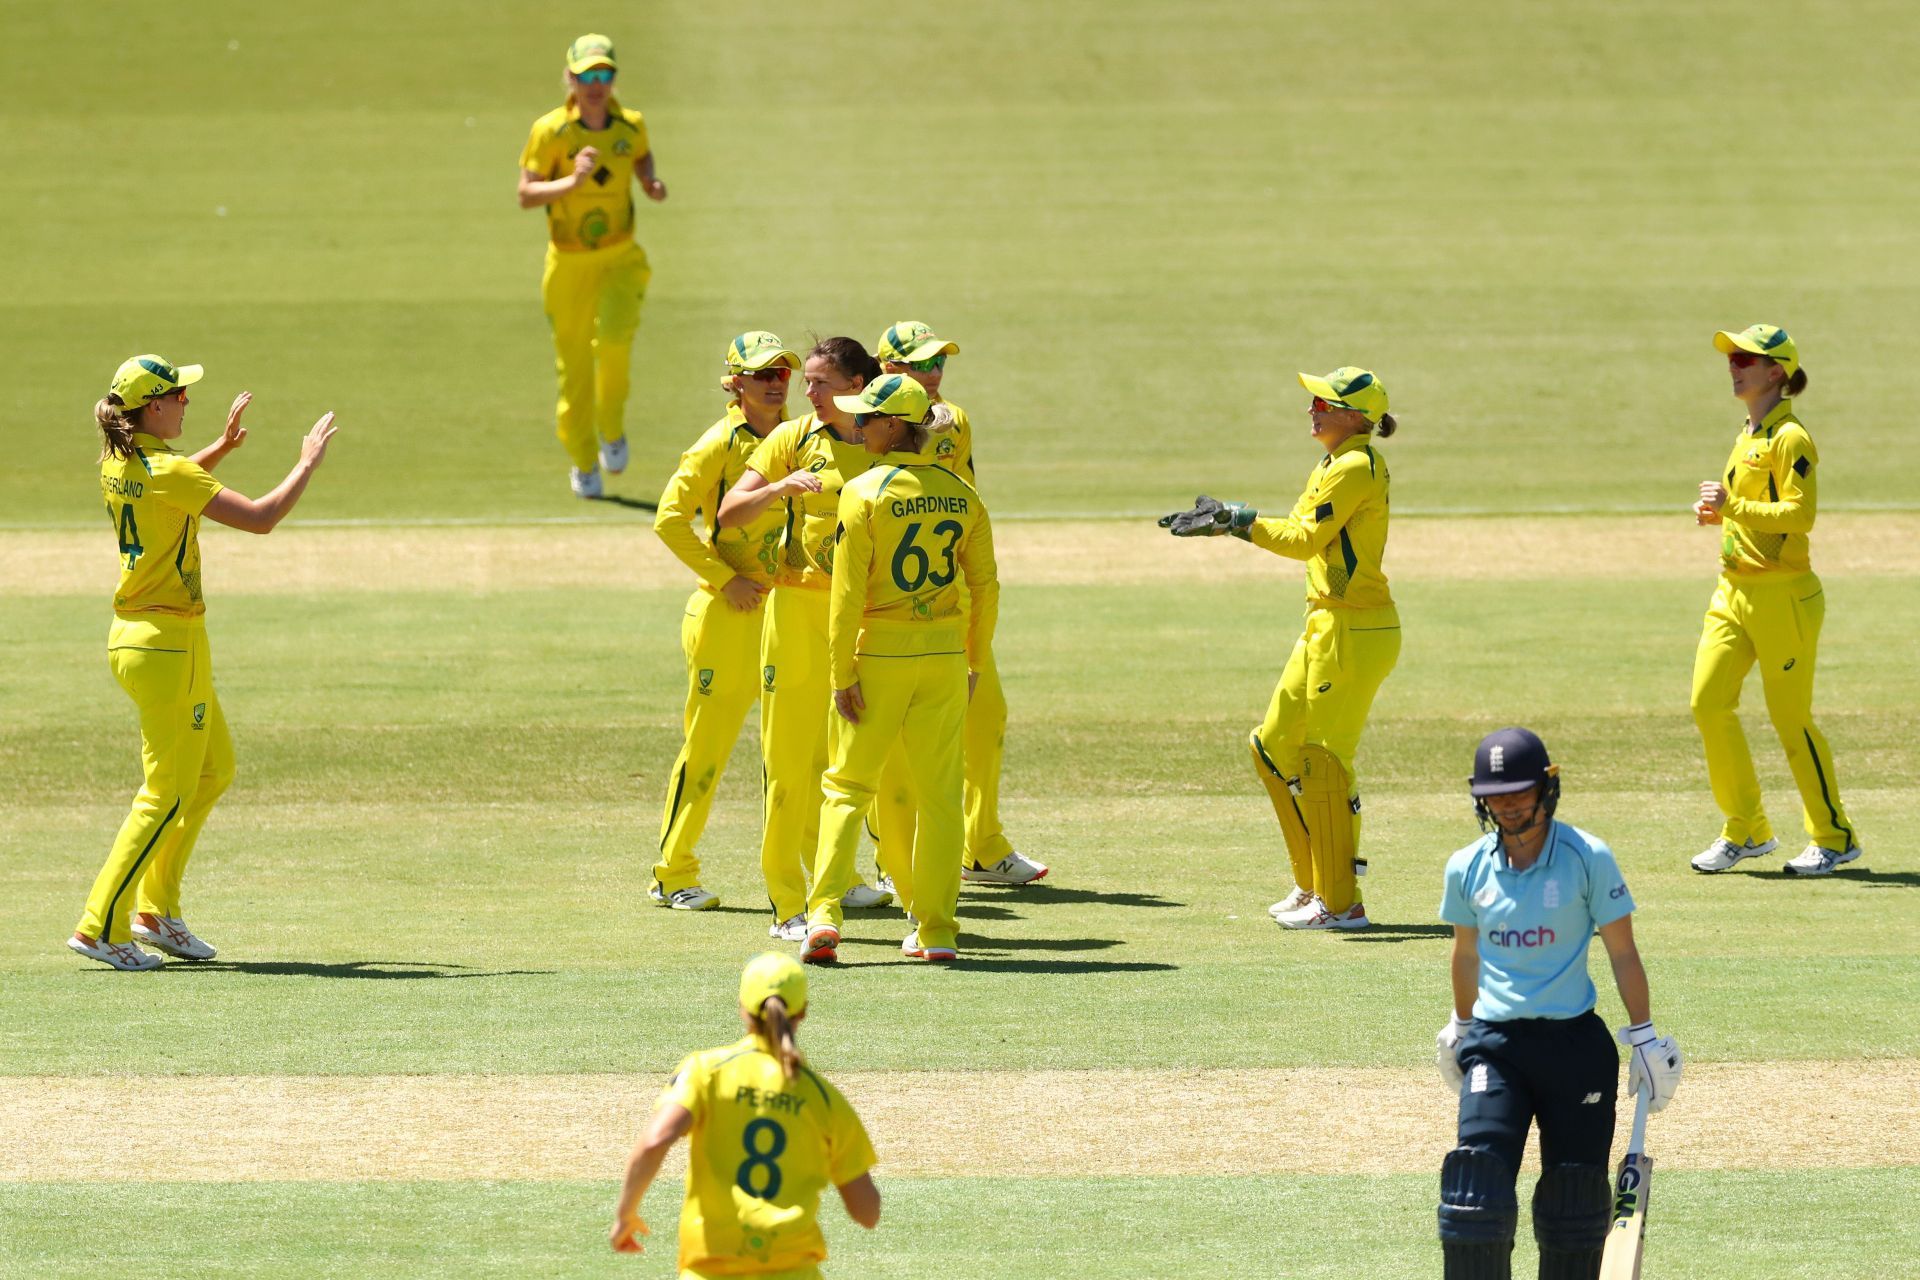 Australia v England - ODI Ashes Series: Game 2